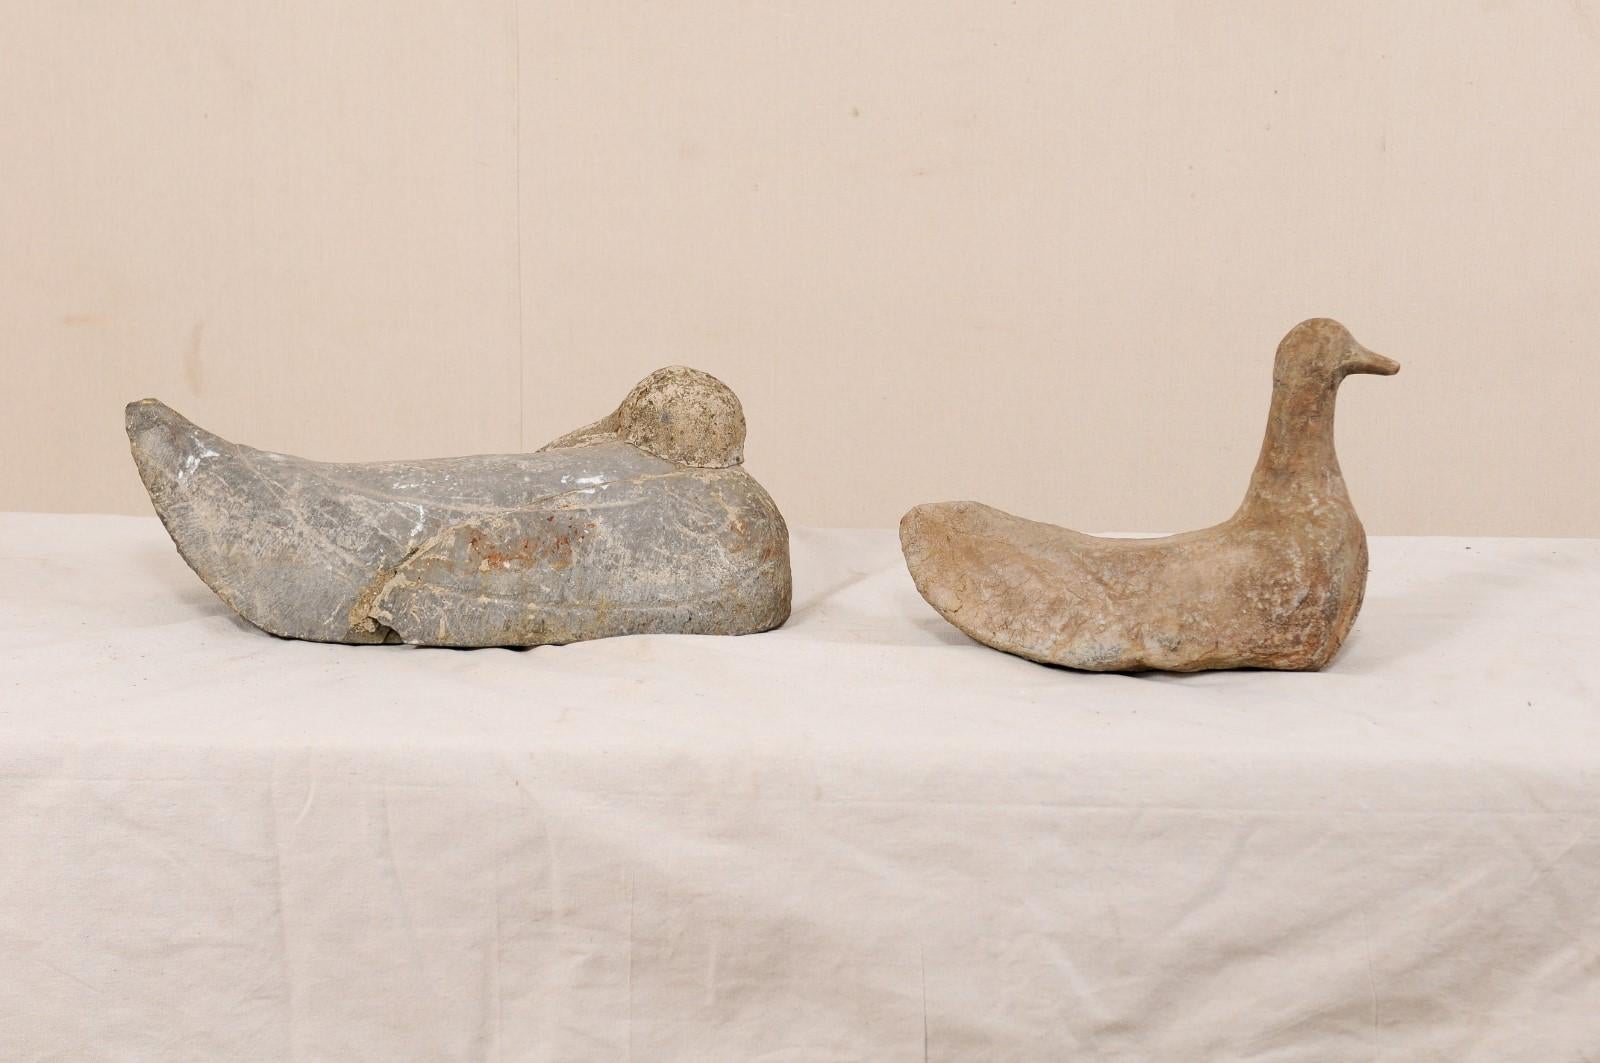 Une paire de canards français en pierre sculptée du 19ème siècle. Cette charmante paire de canards anciens en pierre de France a été sculptée à la main de manière primitive et présente un canard endormi, la tête repliée vers l'arrière, ainsi qu'un